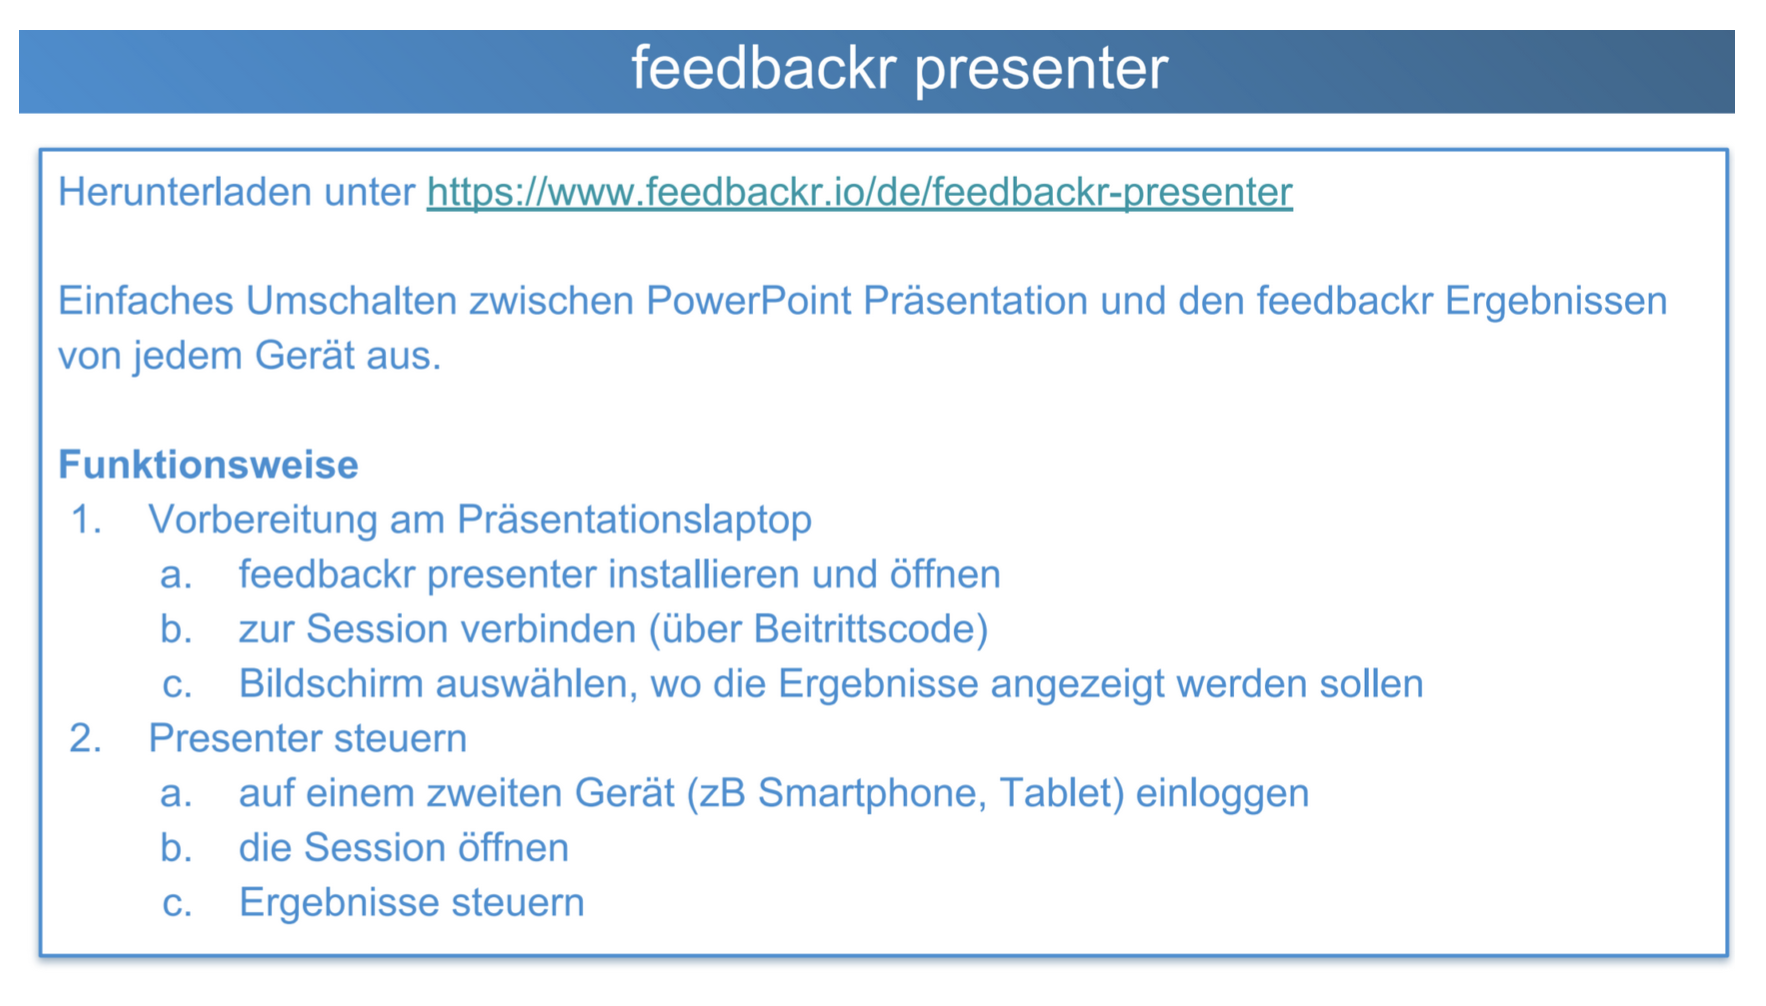 Abbildung der Funktionsweise von feedbackr presenter